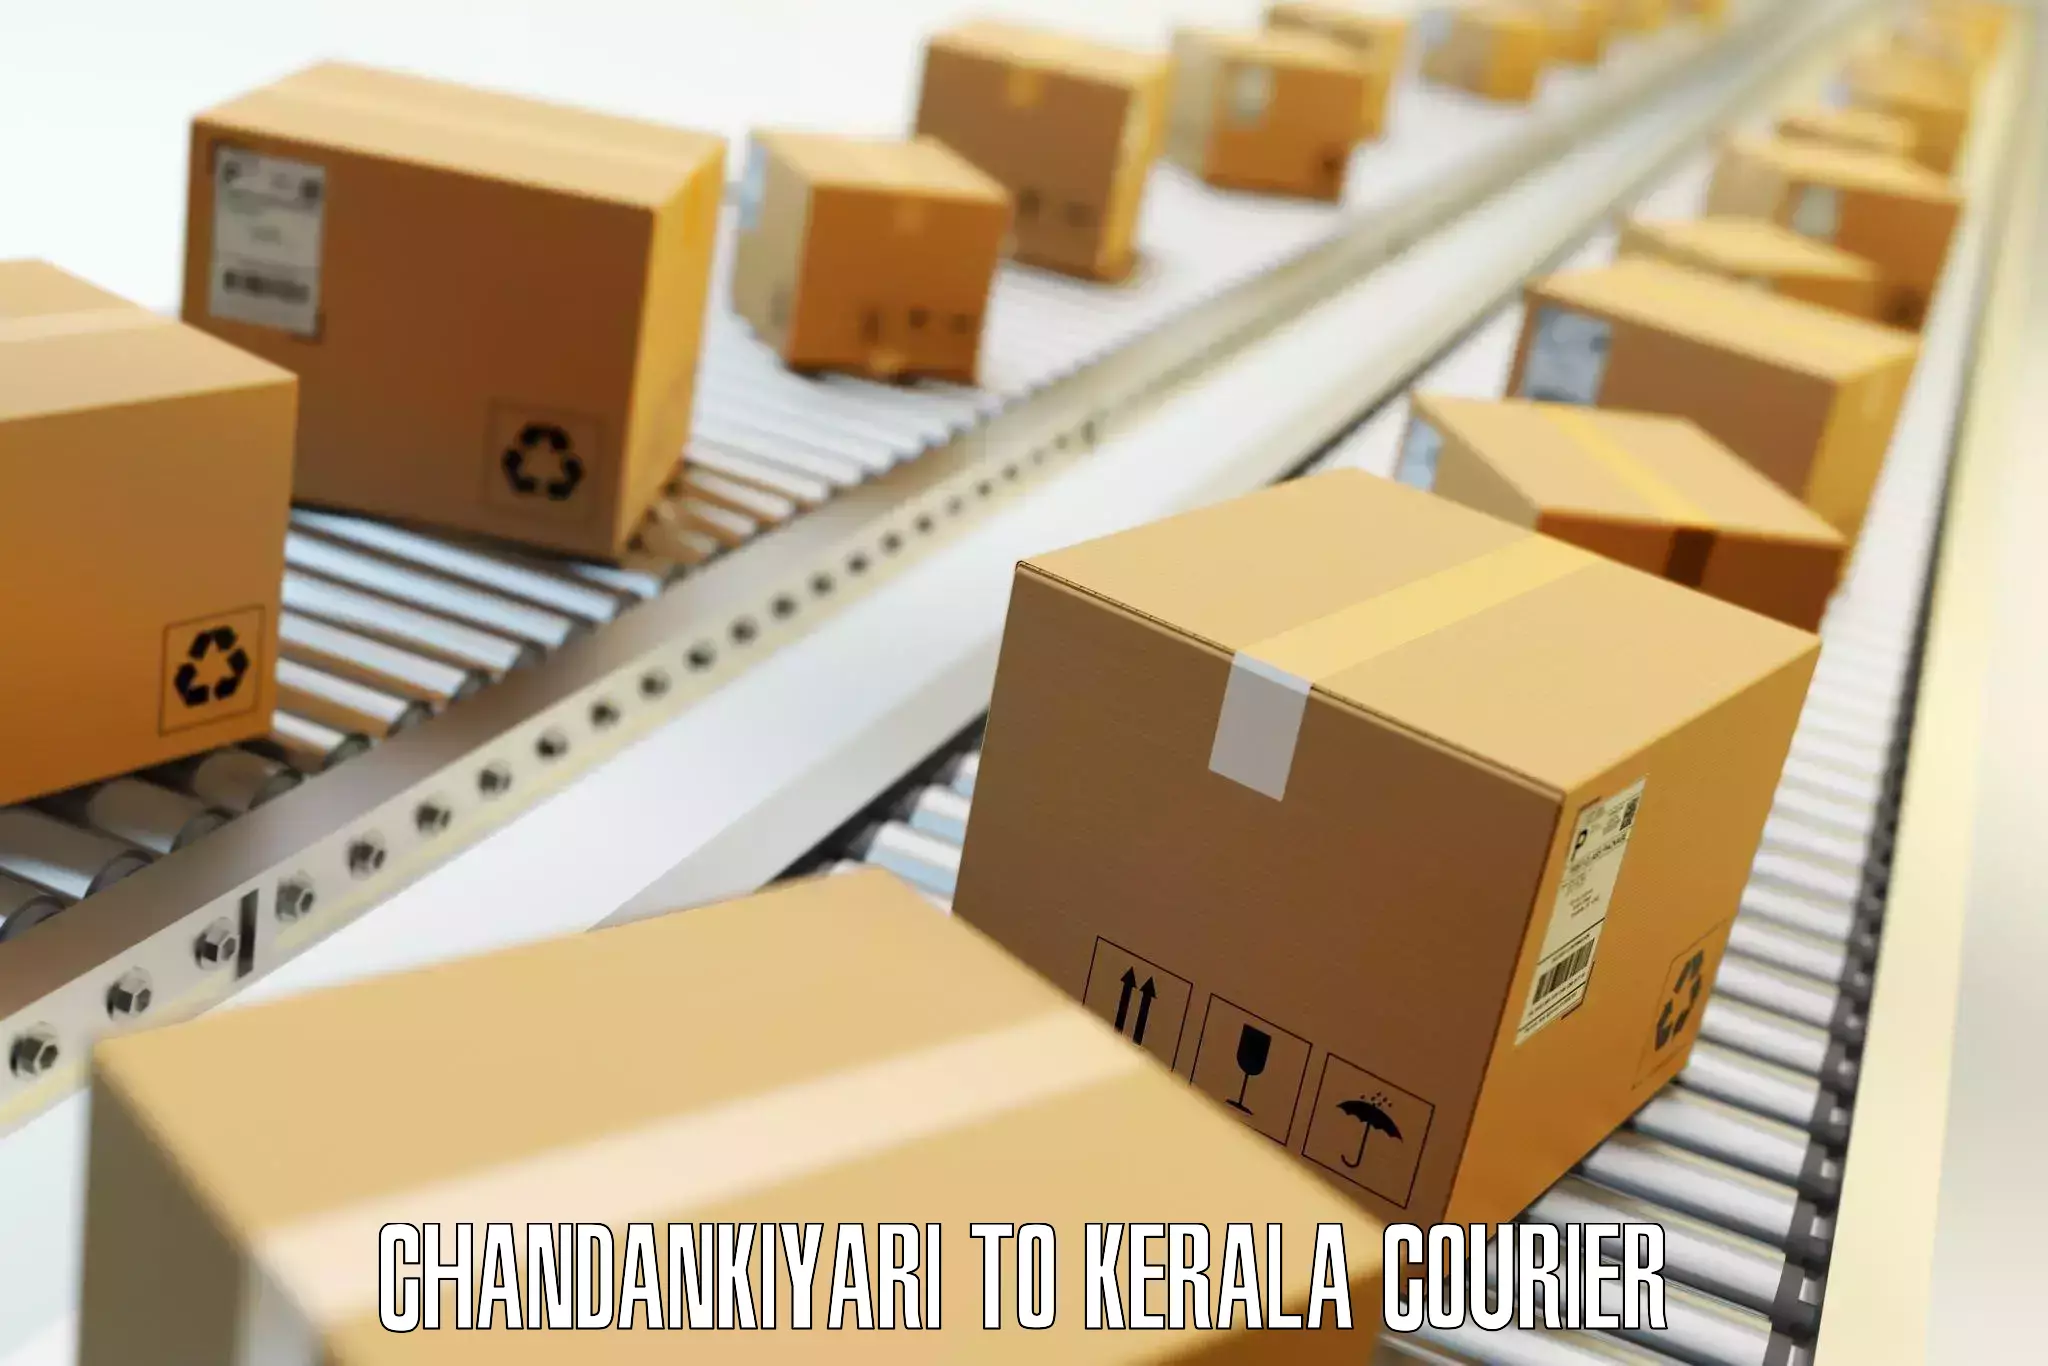 Single item baggage courier Chandankiyari to Nuchiyad